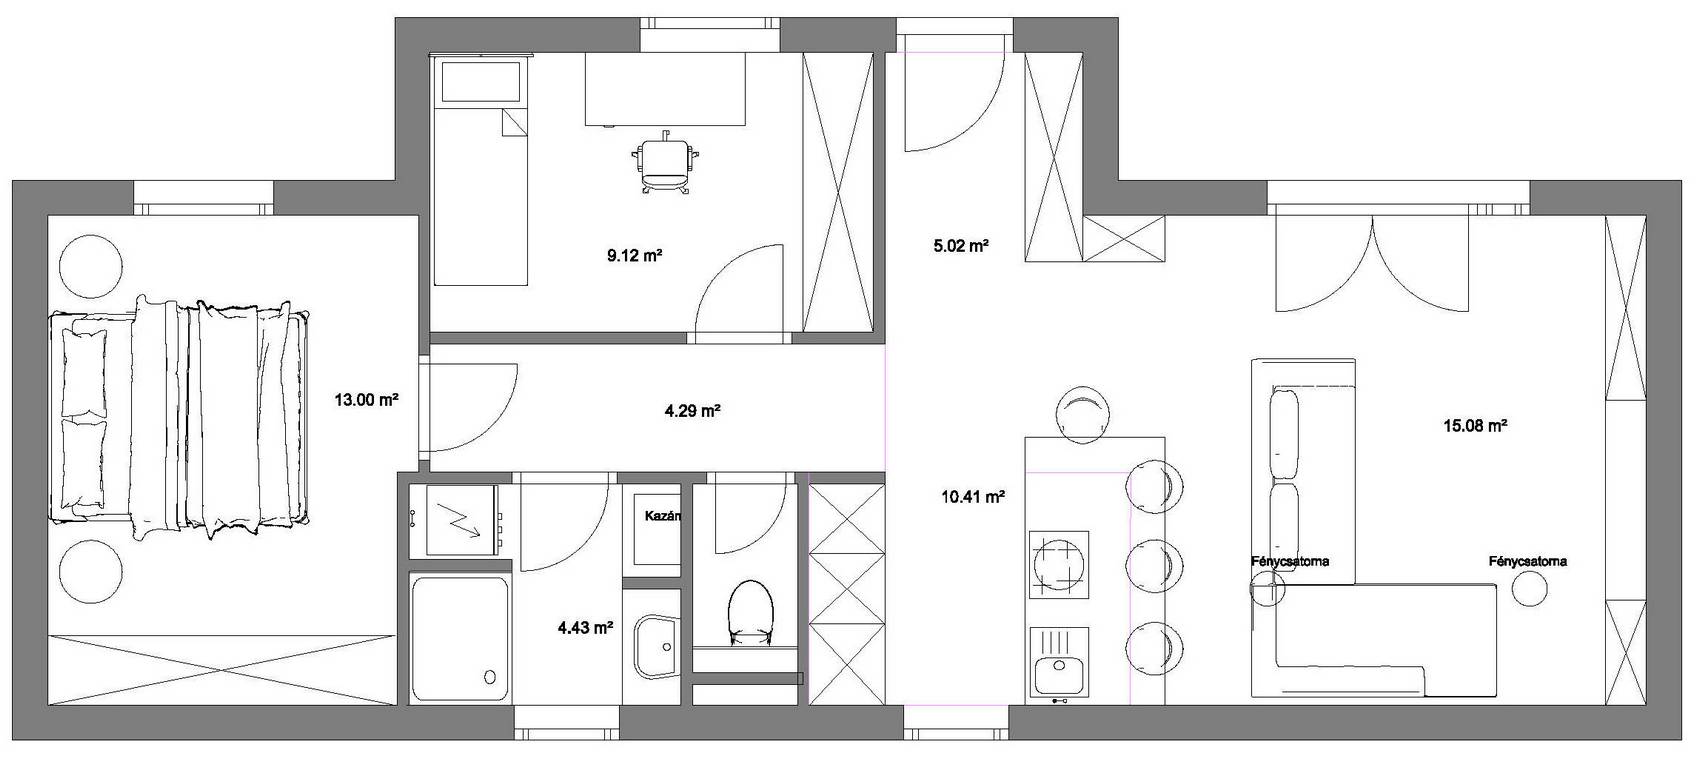 Sorházi lakás berendezése 63 m2-en, egy kis kertes ház funkcióival